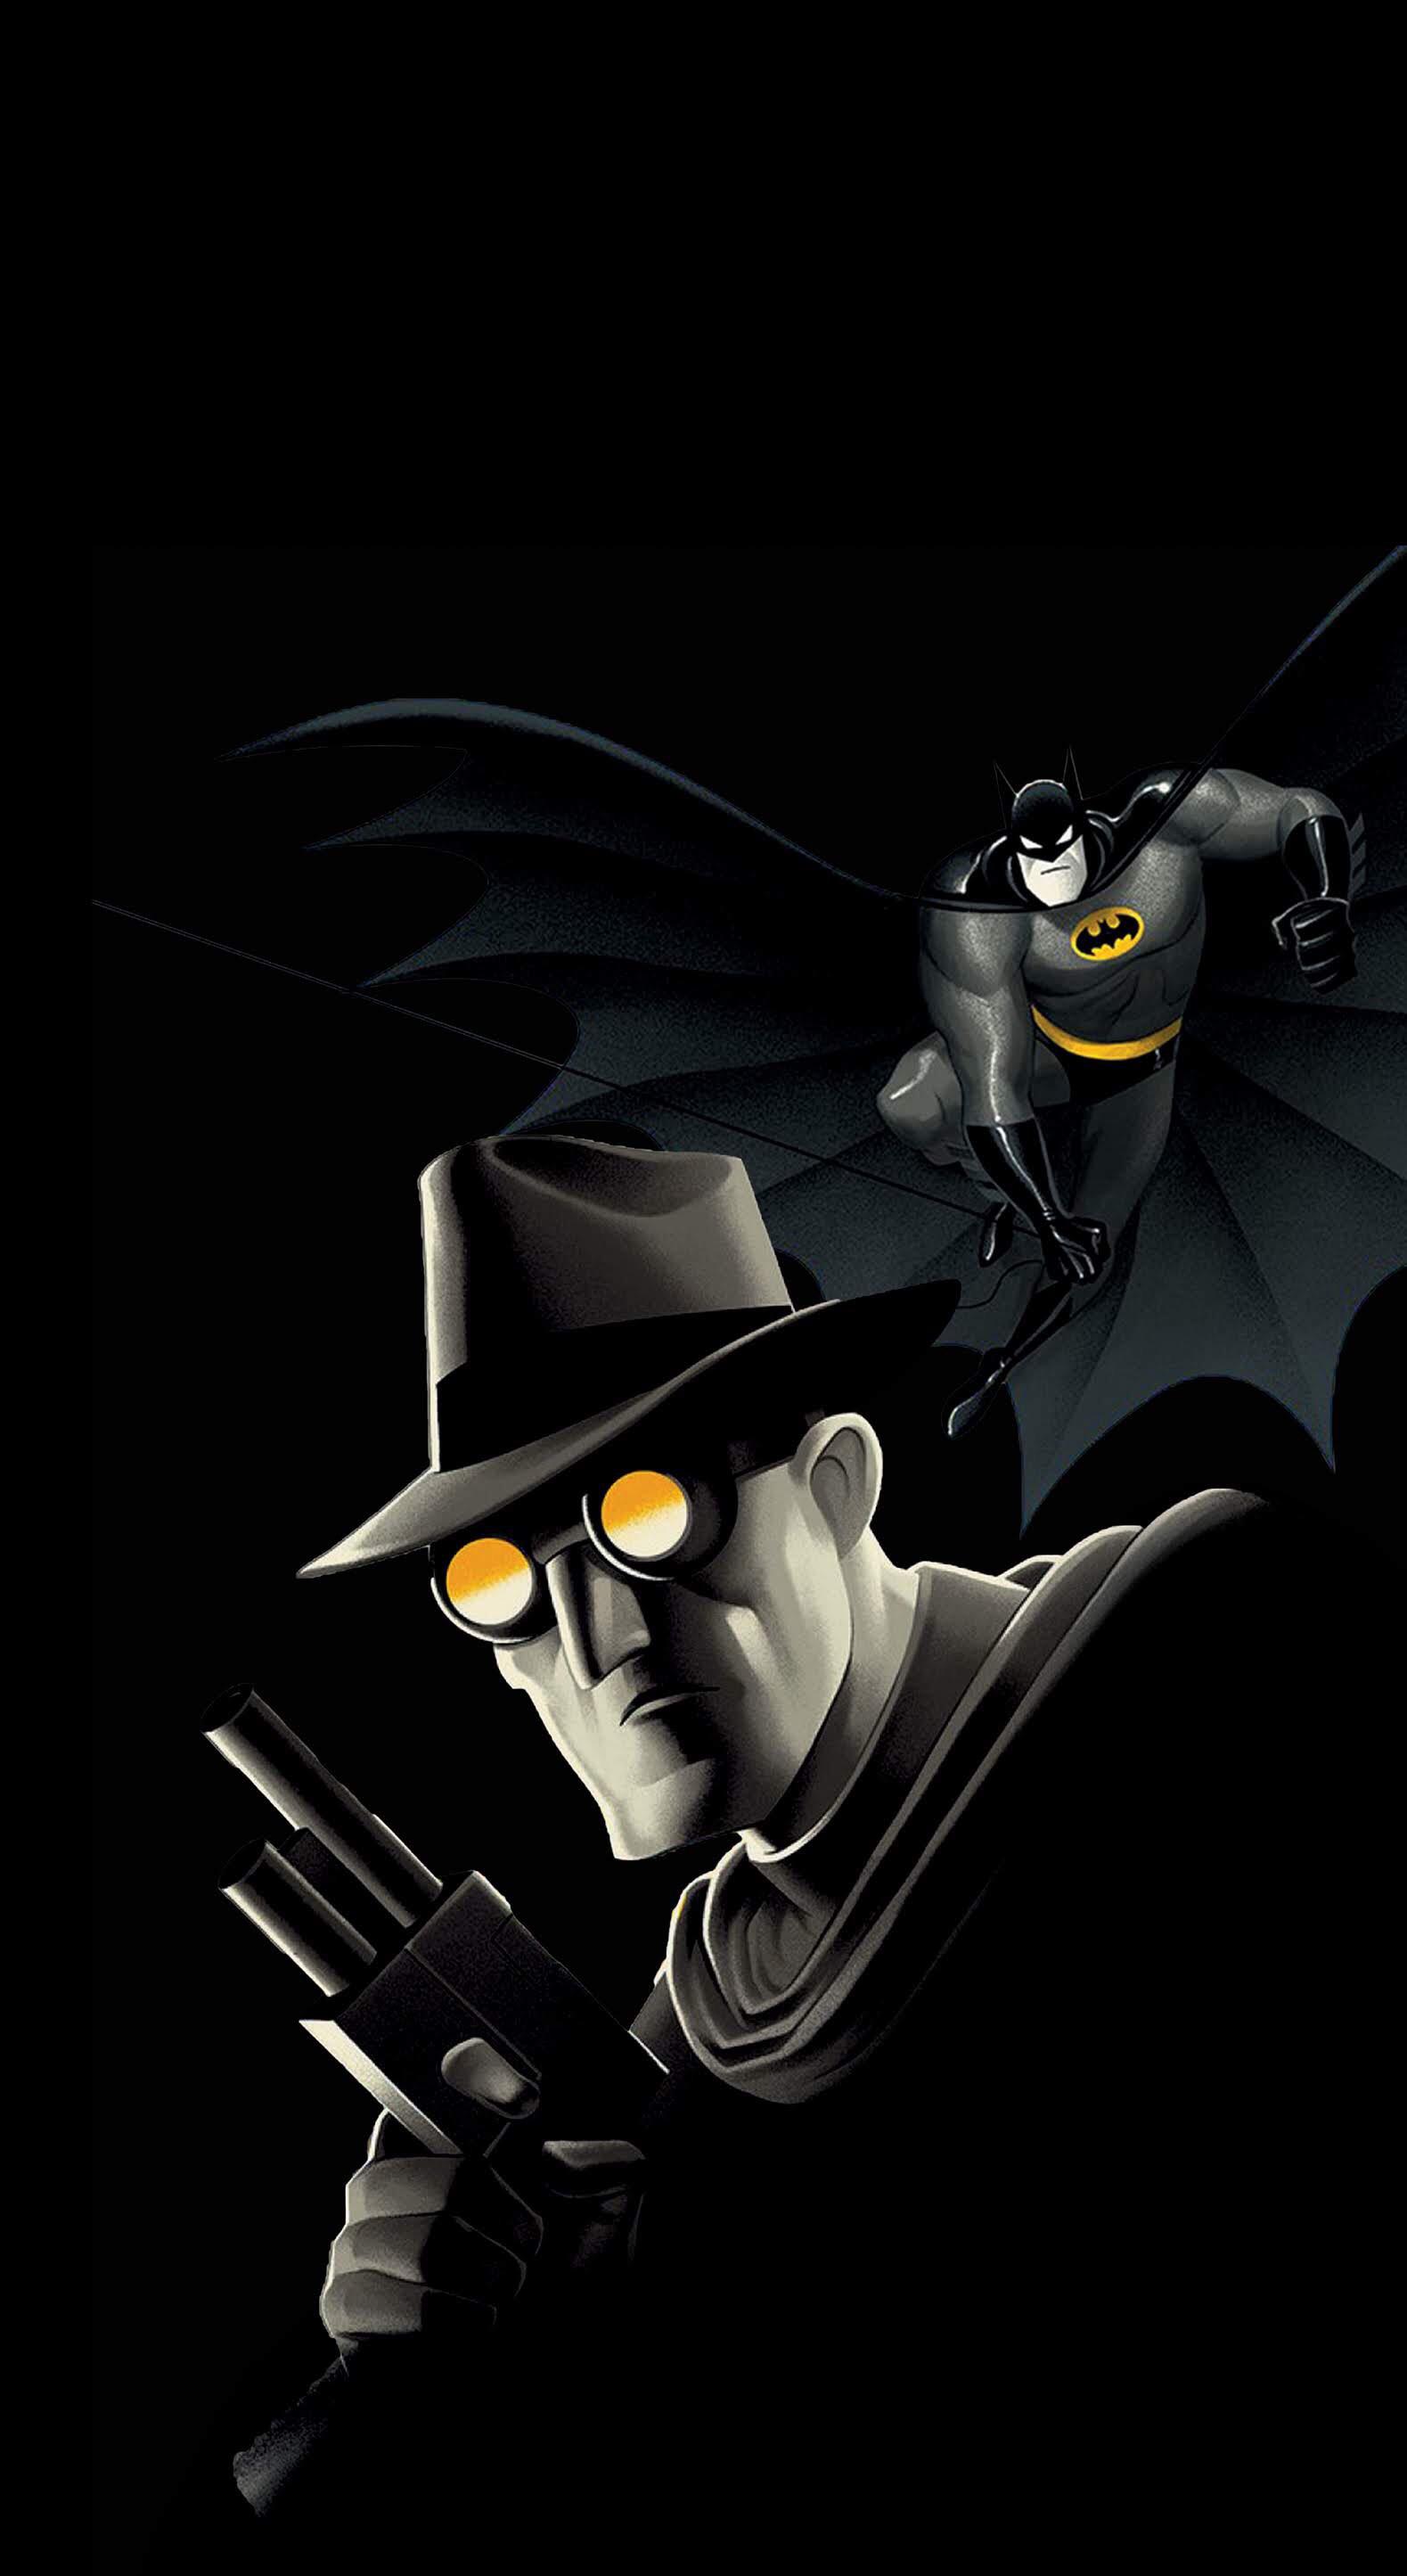 Download 34 Wallpaper Iphone Batman Cartoon Gambar Populer Terbaik